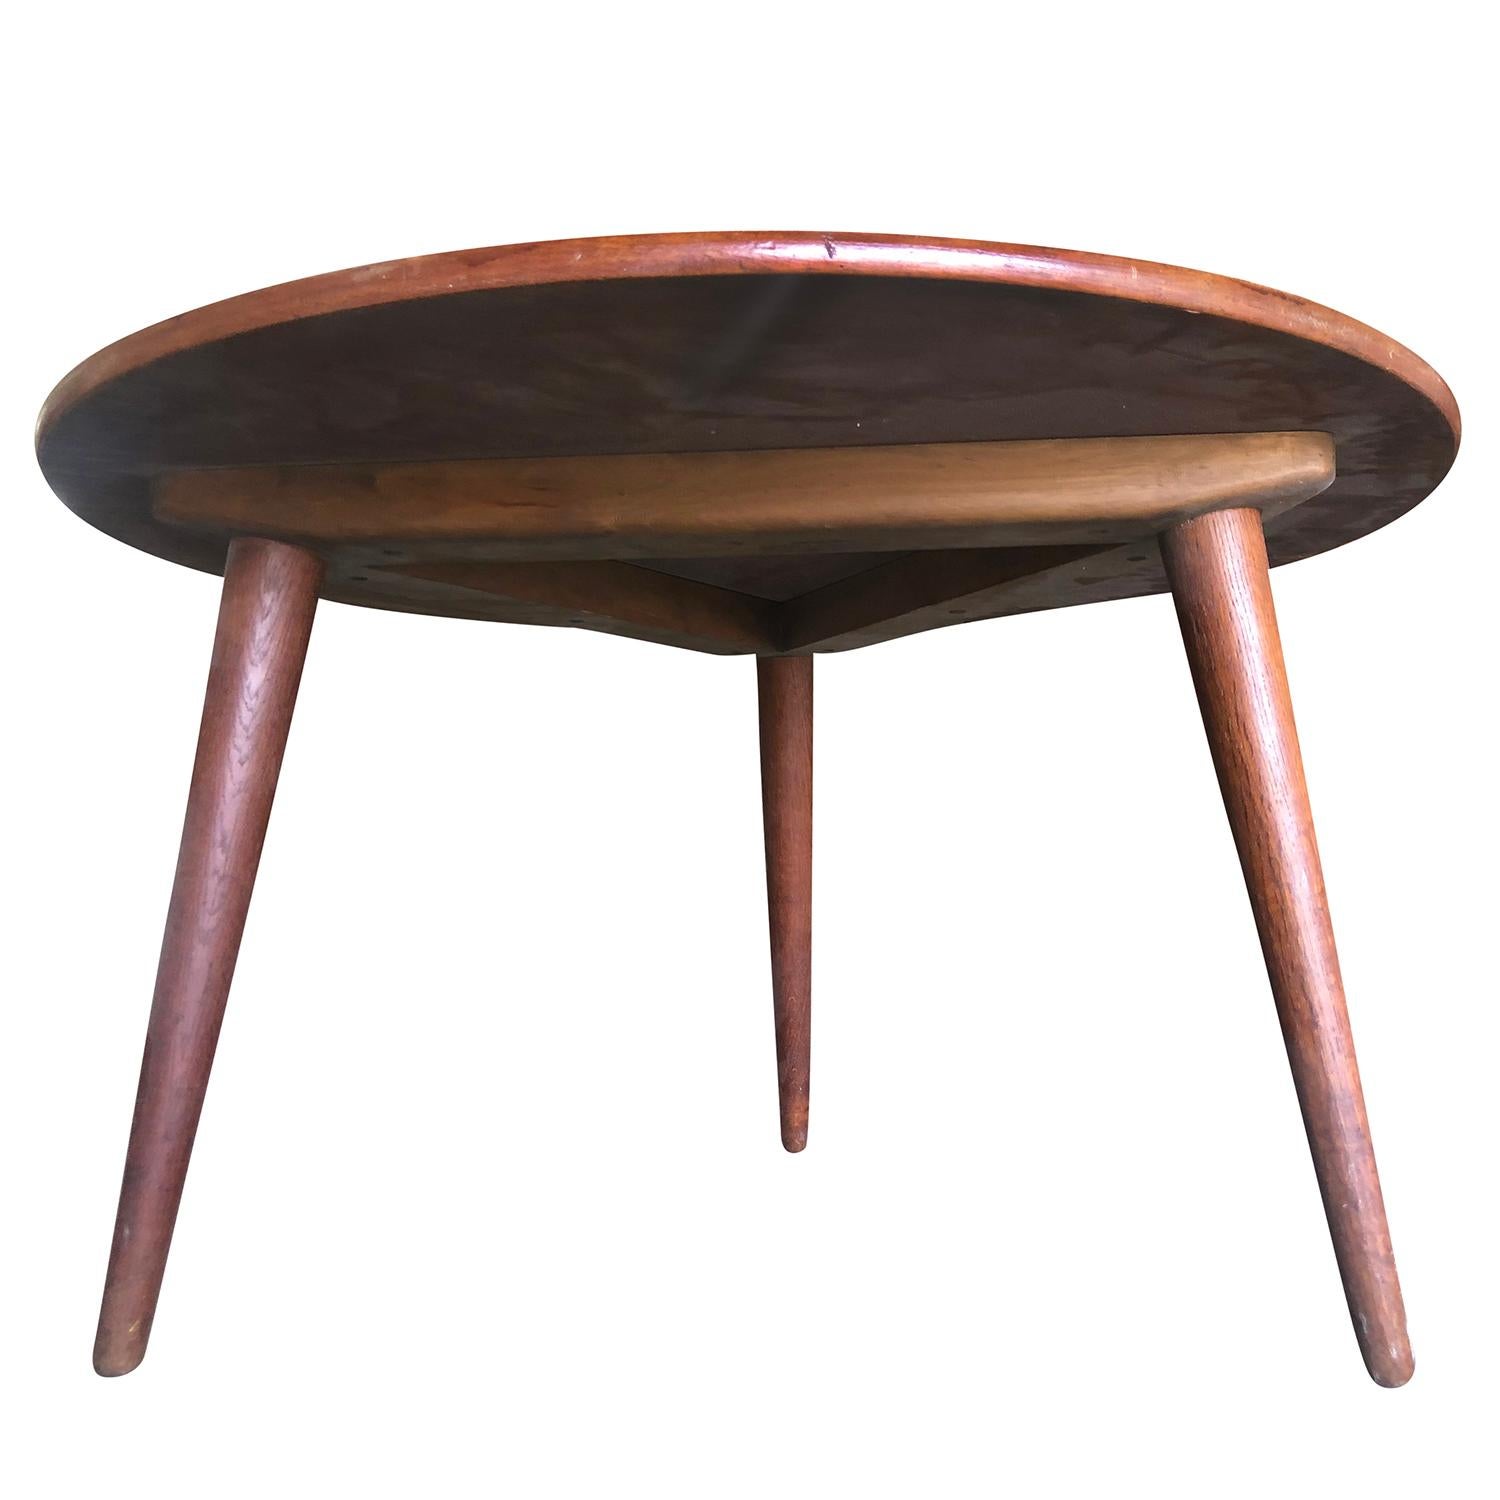 Table basse ronde vintage du milieu du siècle en bois de teck travaillé à la main. Cette table d'appoint danoise a été conçue par Hans J. Wegner et produite par Andreas Tuck. Elle est en bon état. Usures dues à l'âge et à l'utilisation, vers